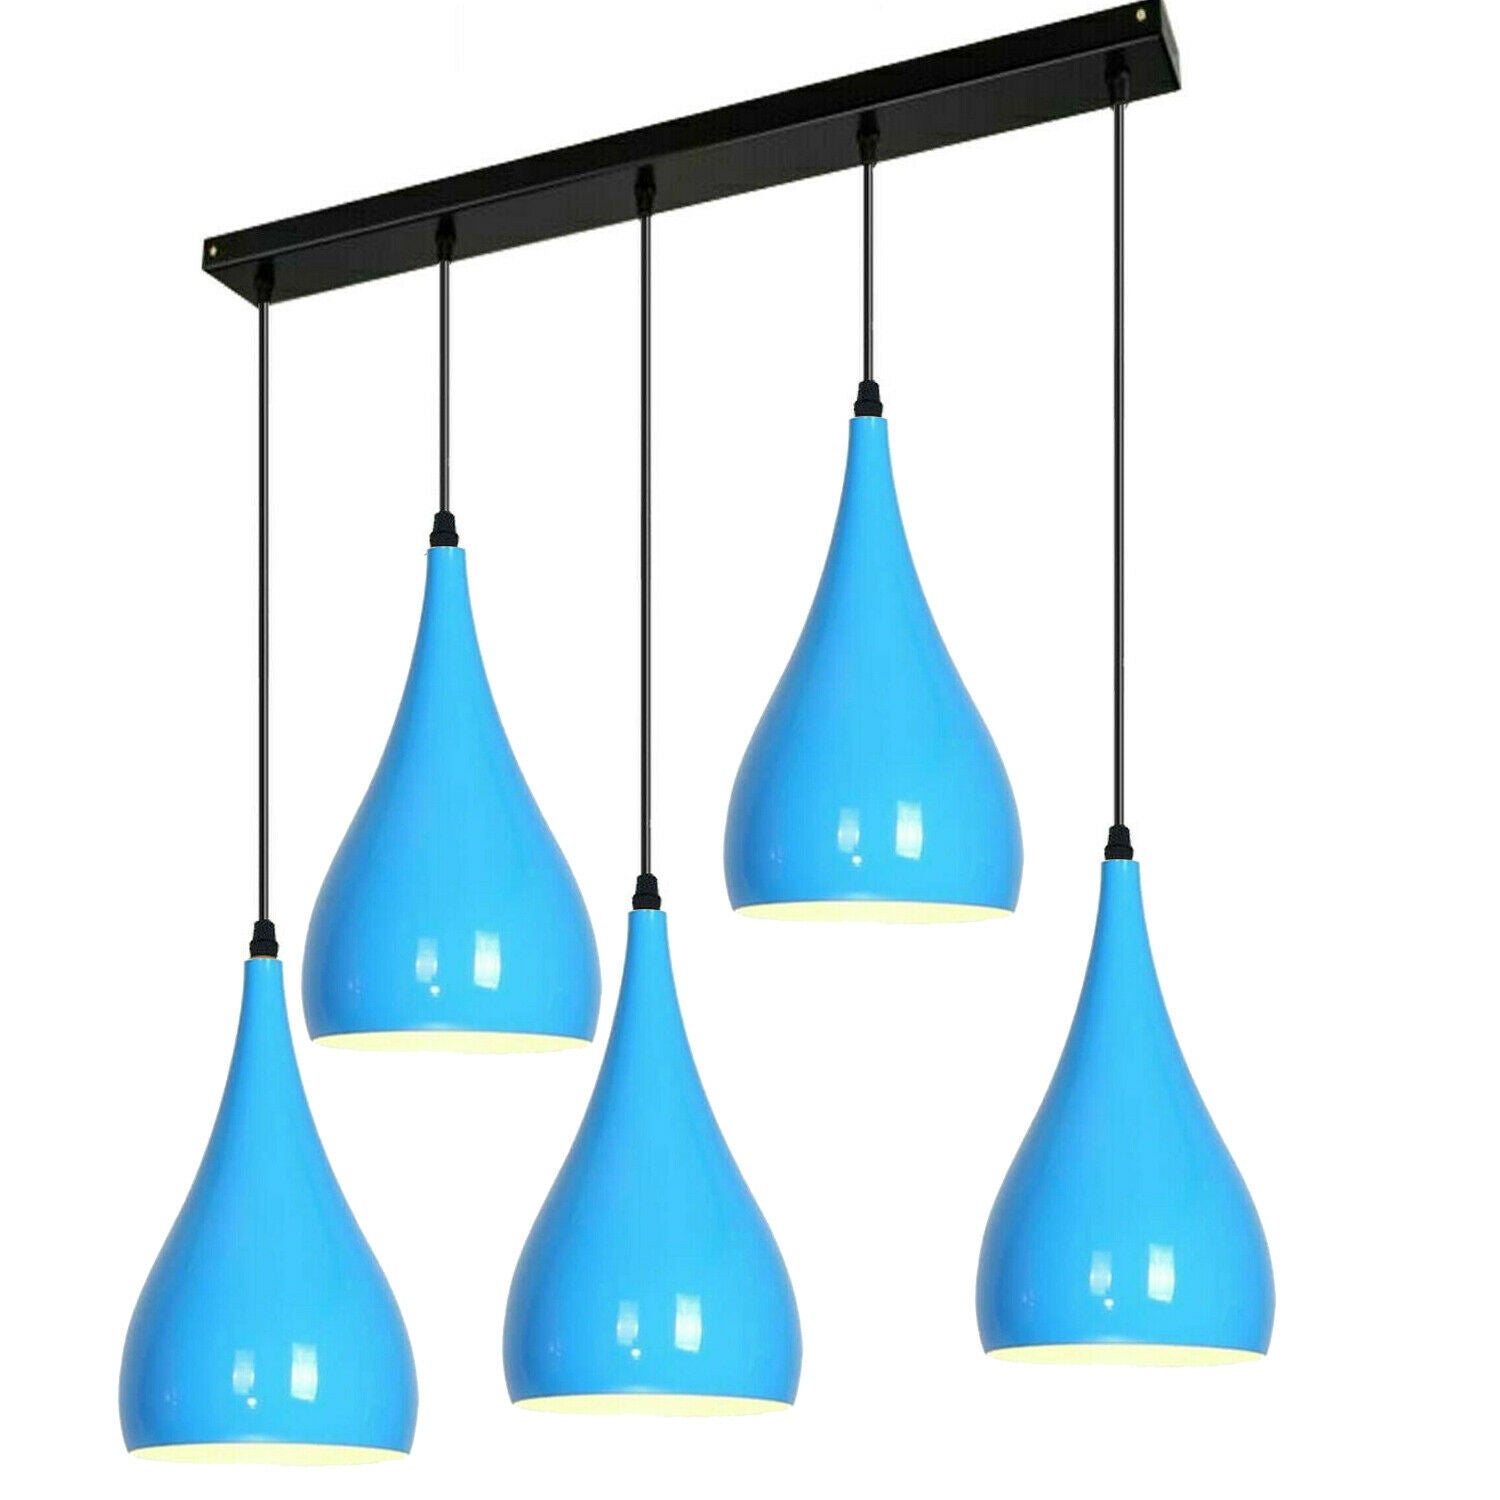 Blue 5 Outlet Ceiling Light Fixtures Black Hanging Pendant Lighting~1625 - LEDSone UK Ltd